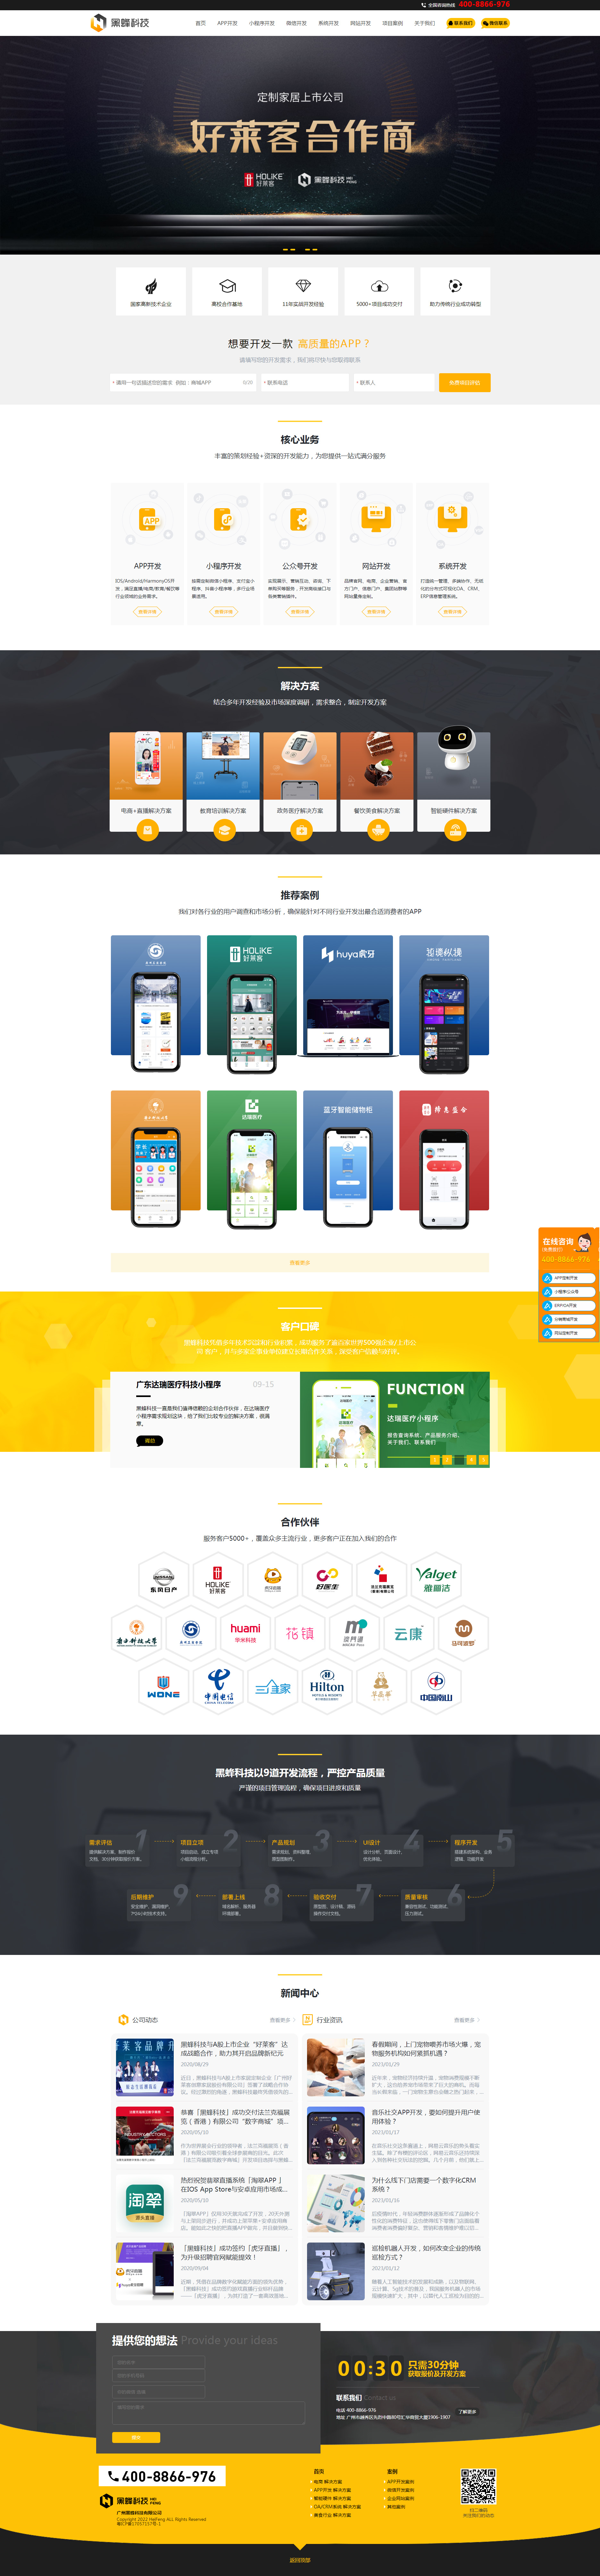 广州黑蜂科技有限公司网站制作首页设计效果图